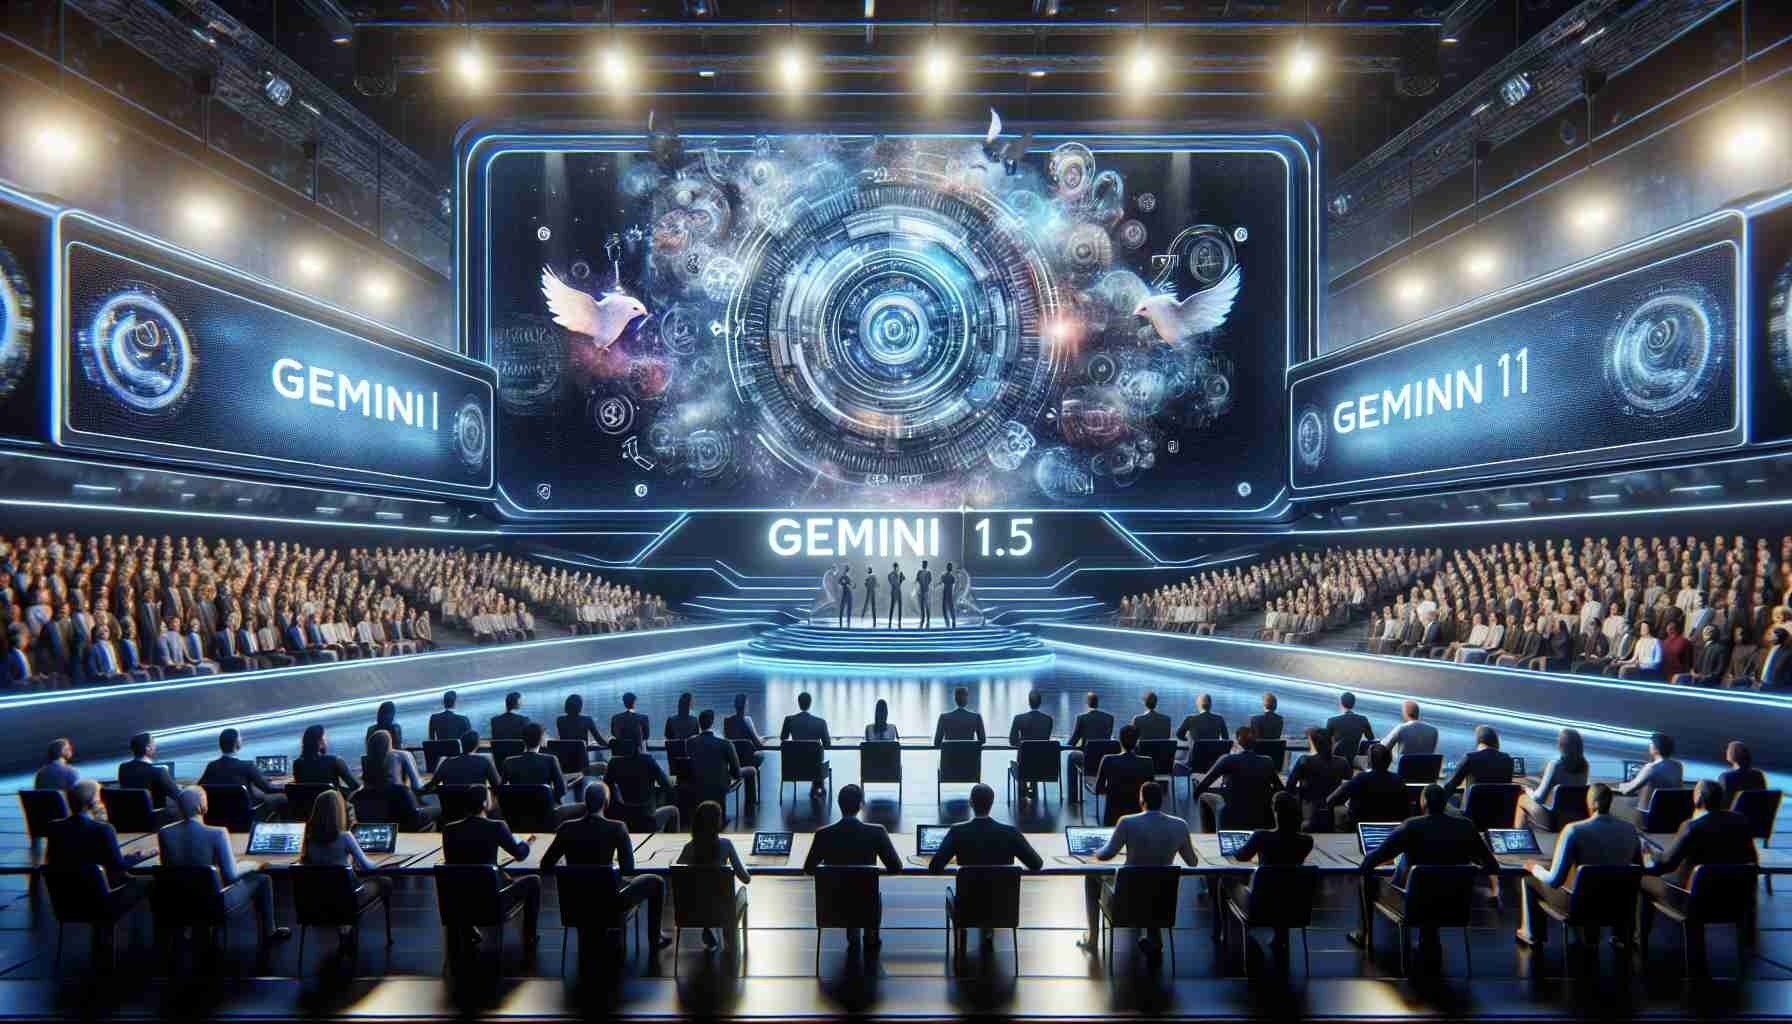 H Google παρουσιάζει το Gemini 1.5, τη νέα γενιά του AI μοντέλου της εταιρείας